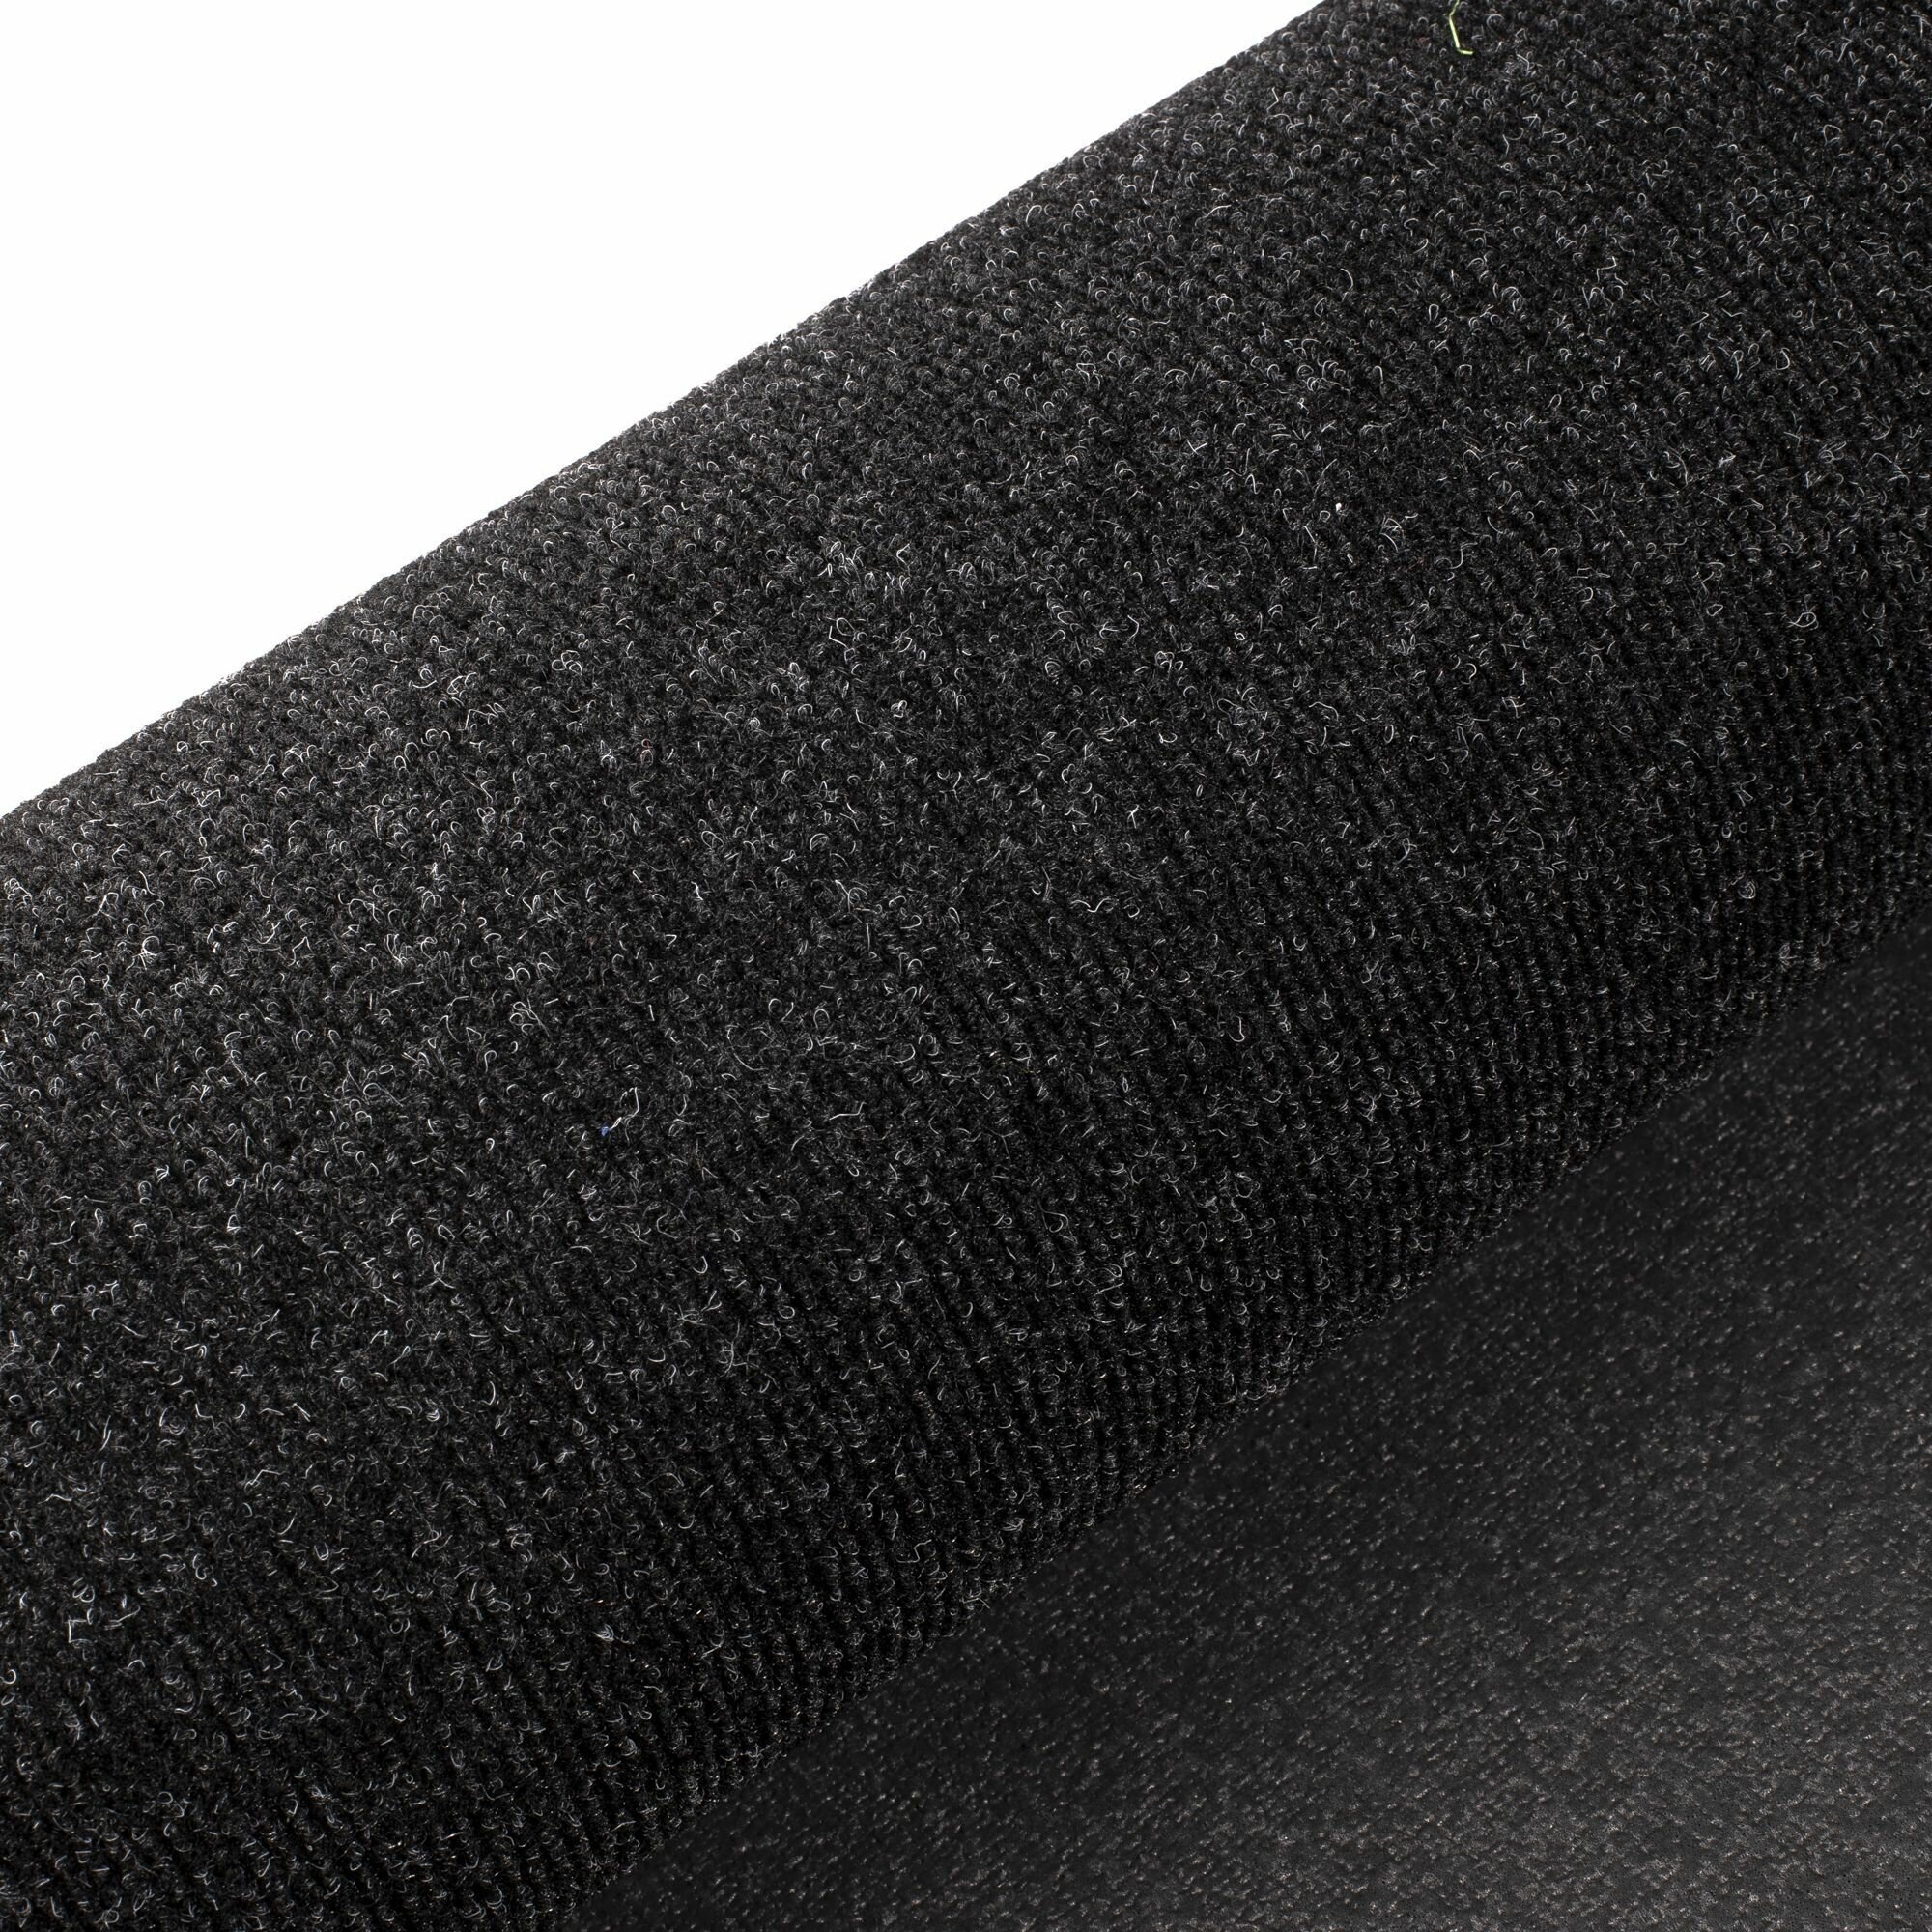 Иглопробивной коврик входной грязезащитный Betap "Dessert 78" на пол. Ковер черного цвета, размер 0,8х1м. - фотография № 7